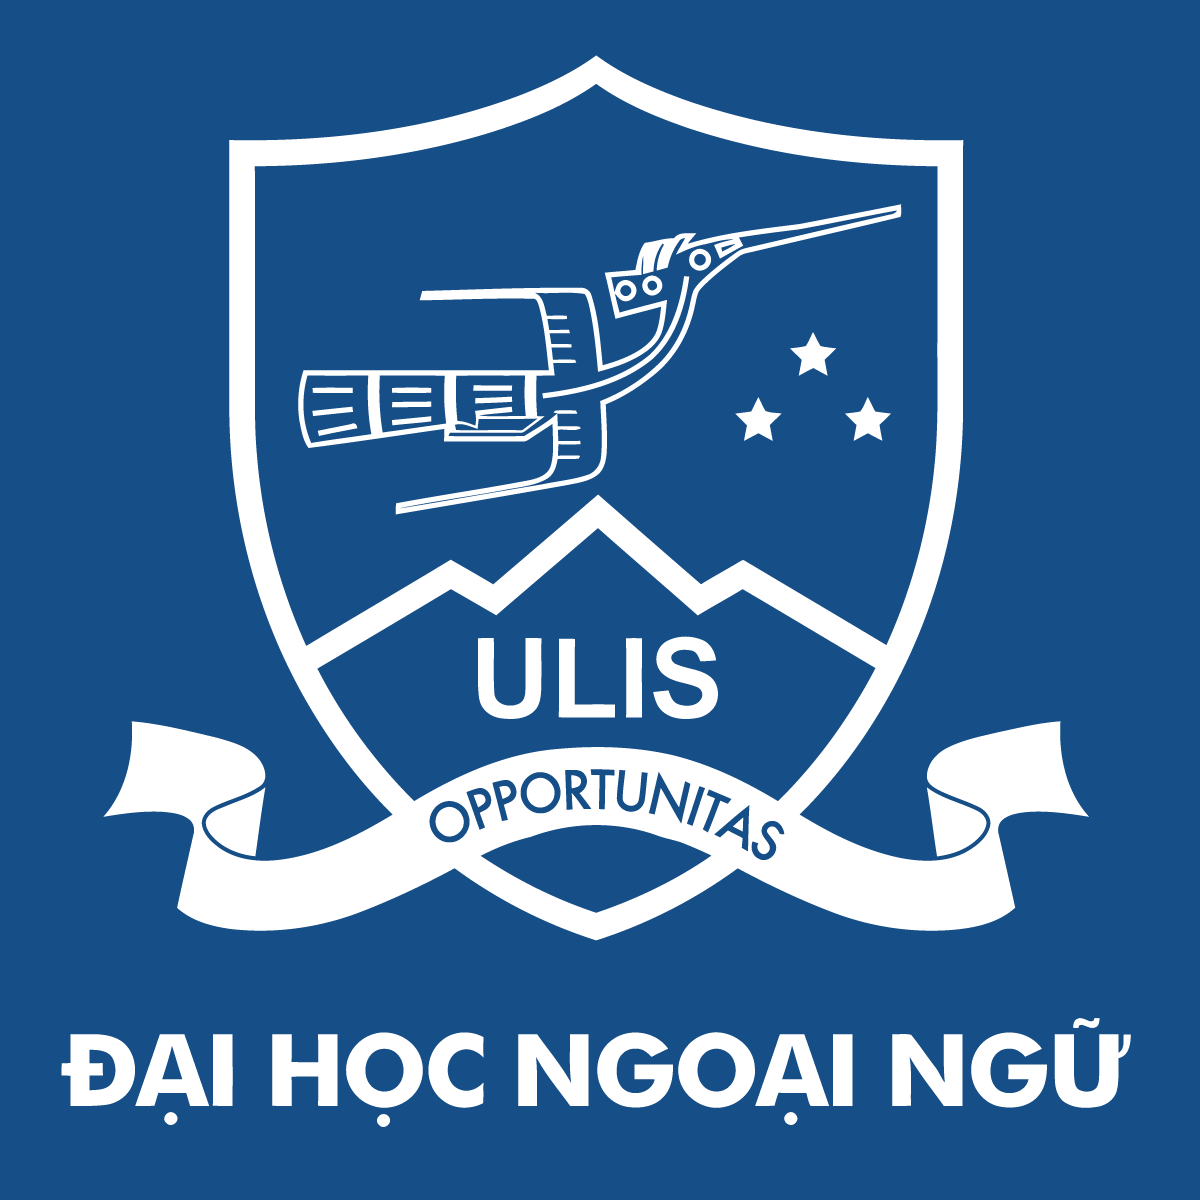 Logo Dai Hoc Ngoai Ngu Blue